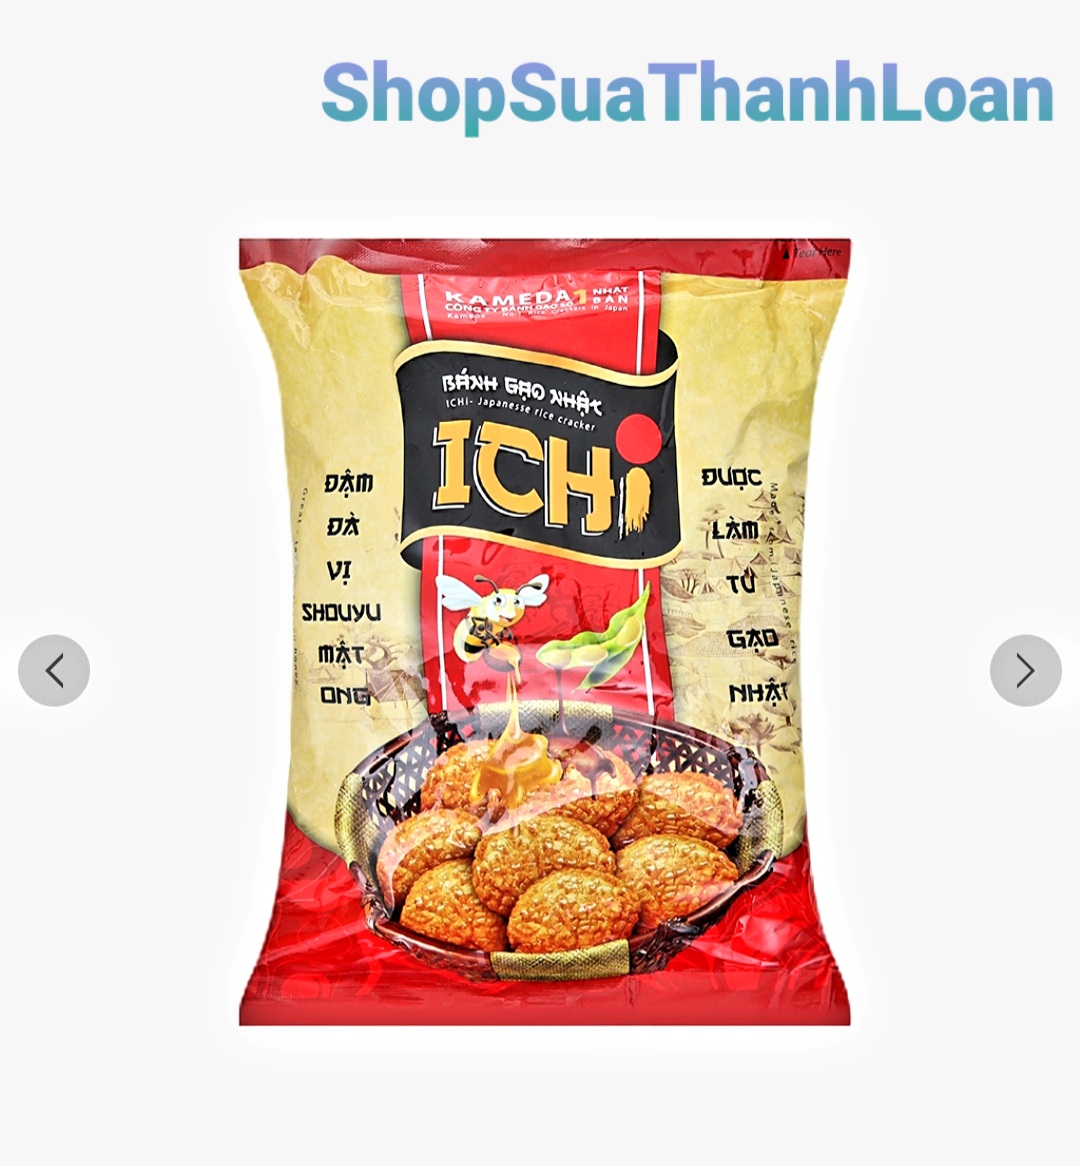 Bánh gạo Nhật vị Shouyu mật ong Ichi - Bịch180gr